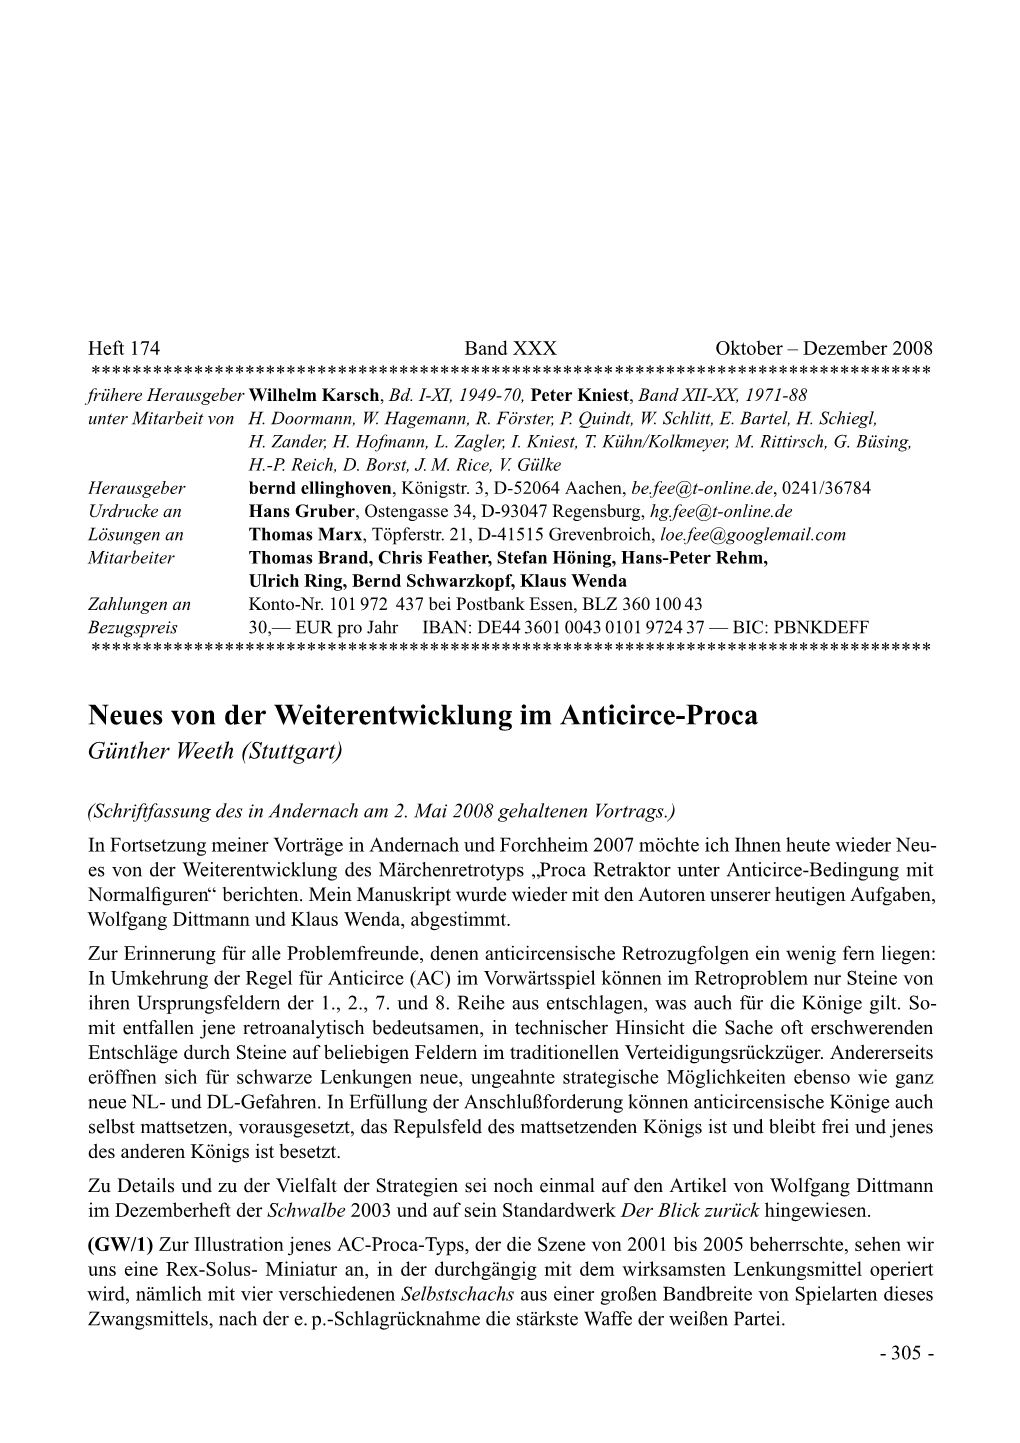 Neues Von Der Weiterentwicklung Im Anticirce-Proca Gunther¨ Weeth (Stuttgart)